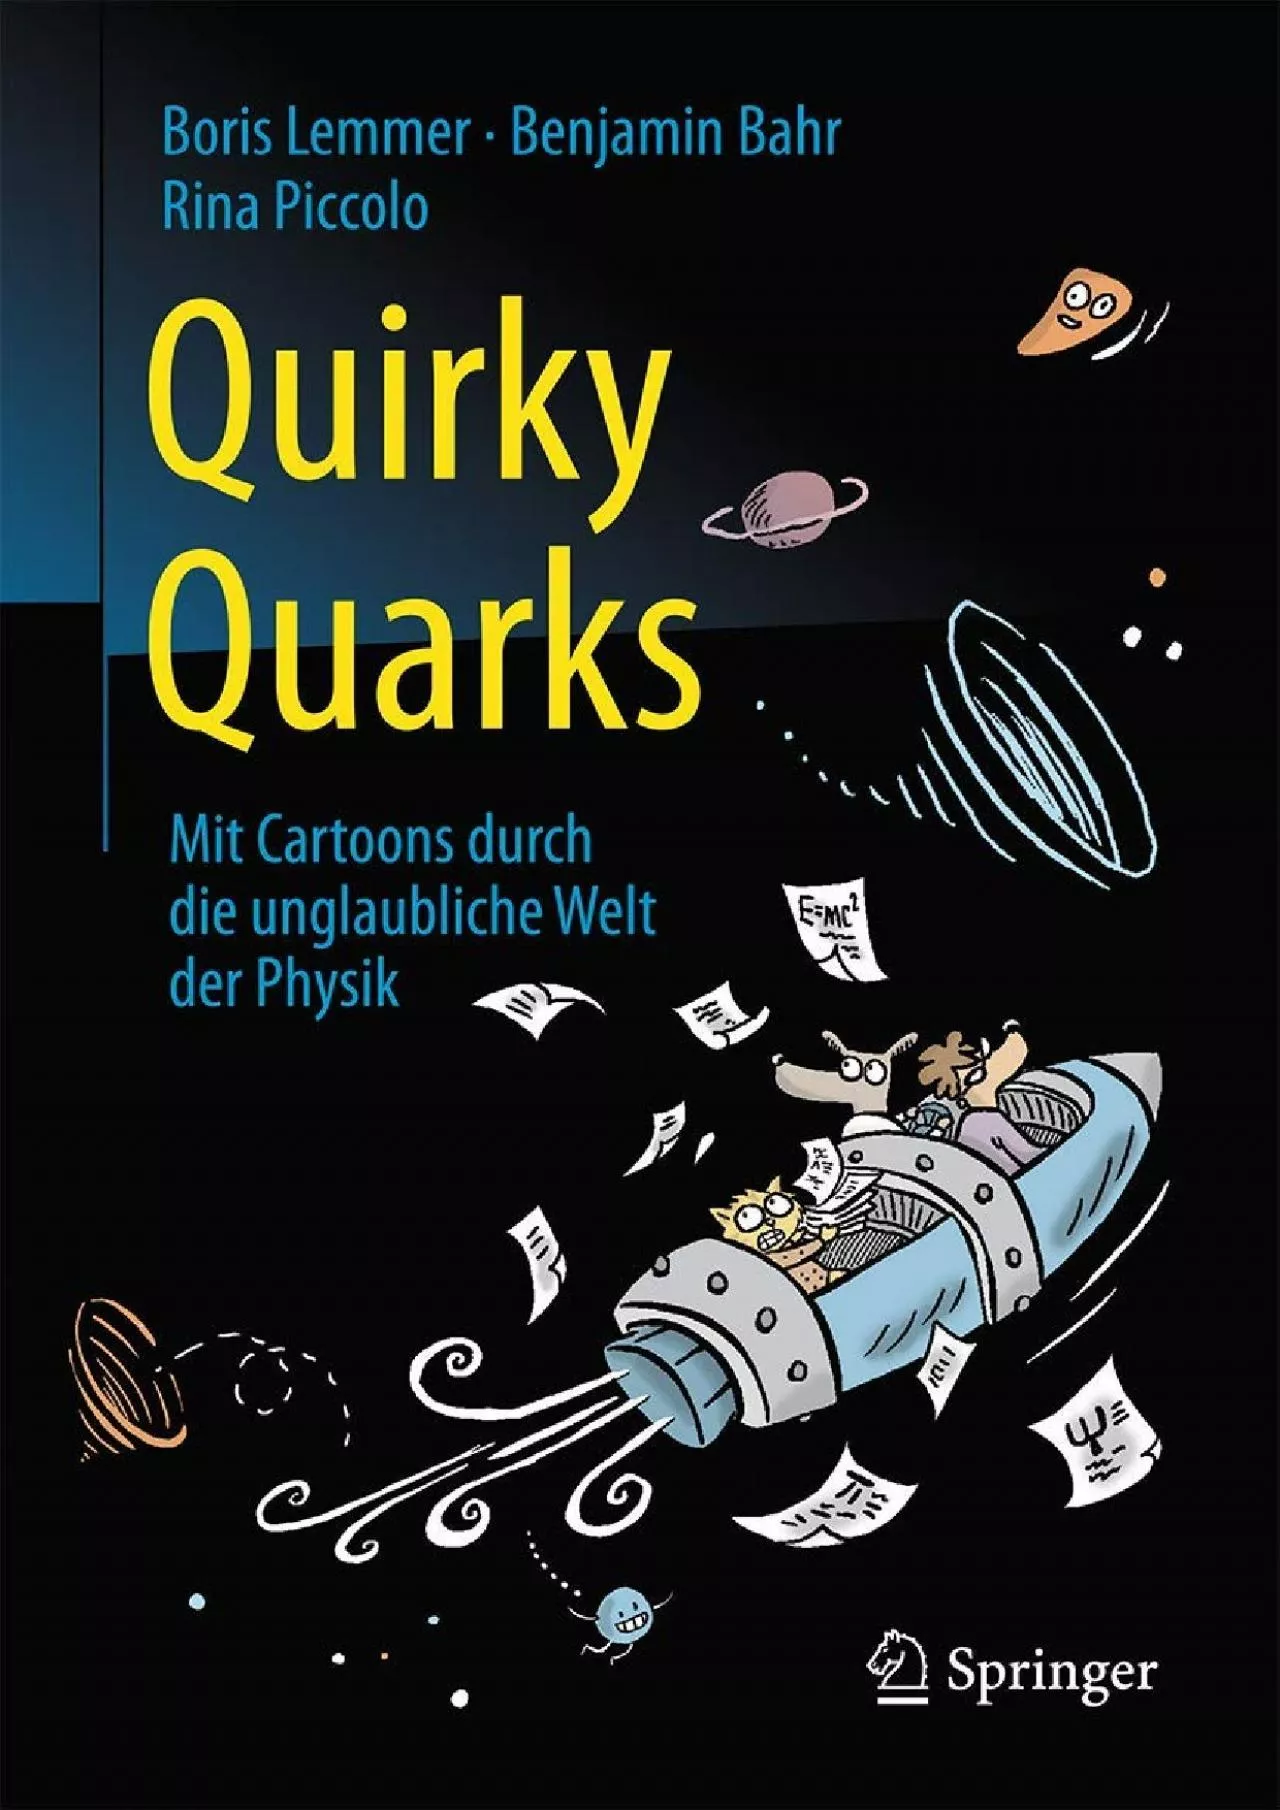 (DOWNLOAD)-Quirky Quarks: Mit Cartoons durch die unglaubliche Welt der Physik (German